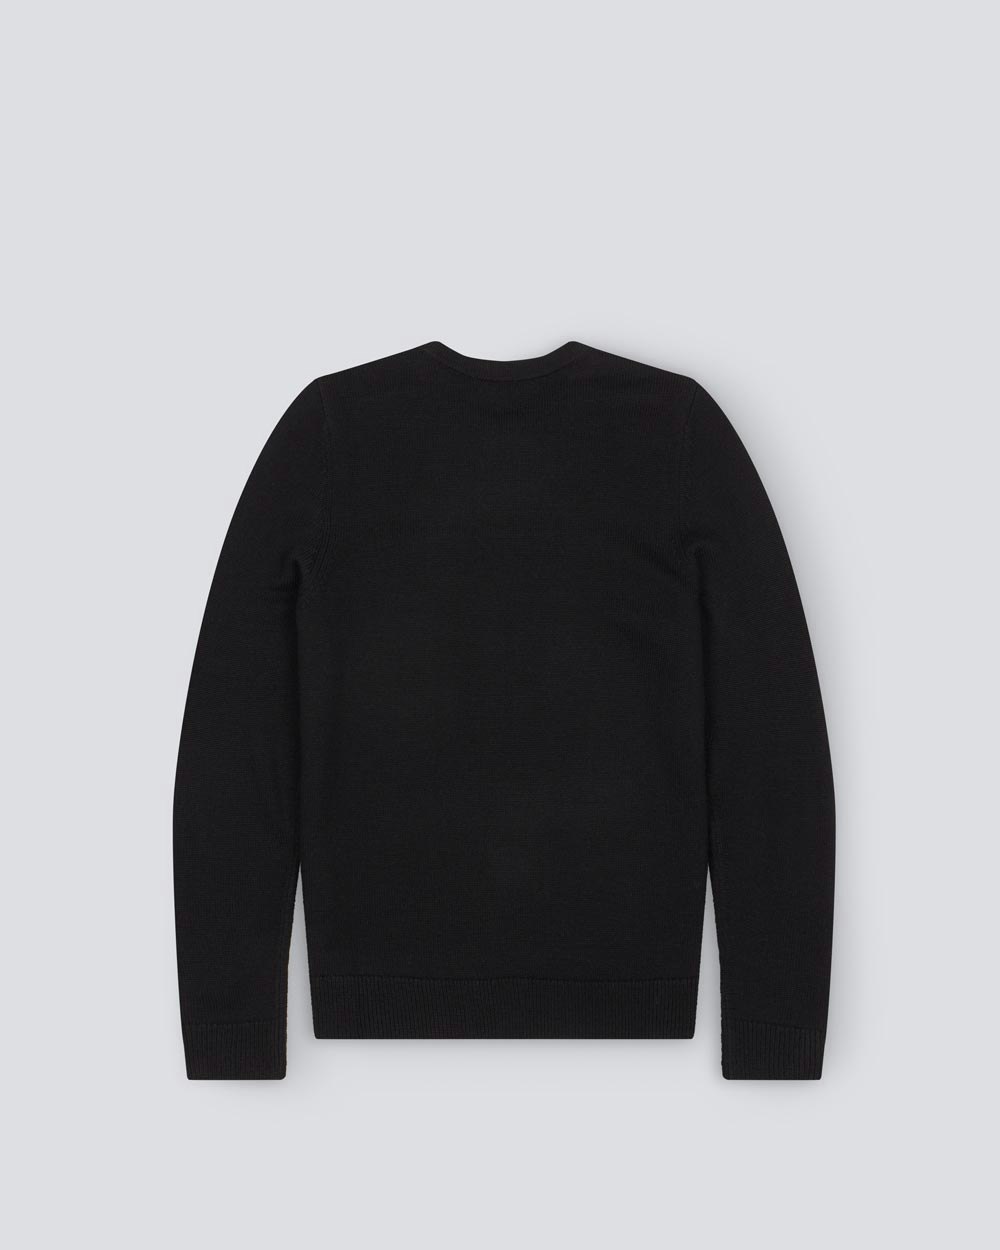 Aspen Sweater II